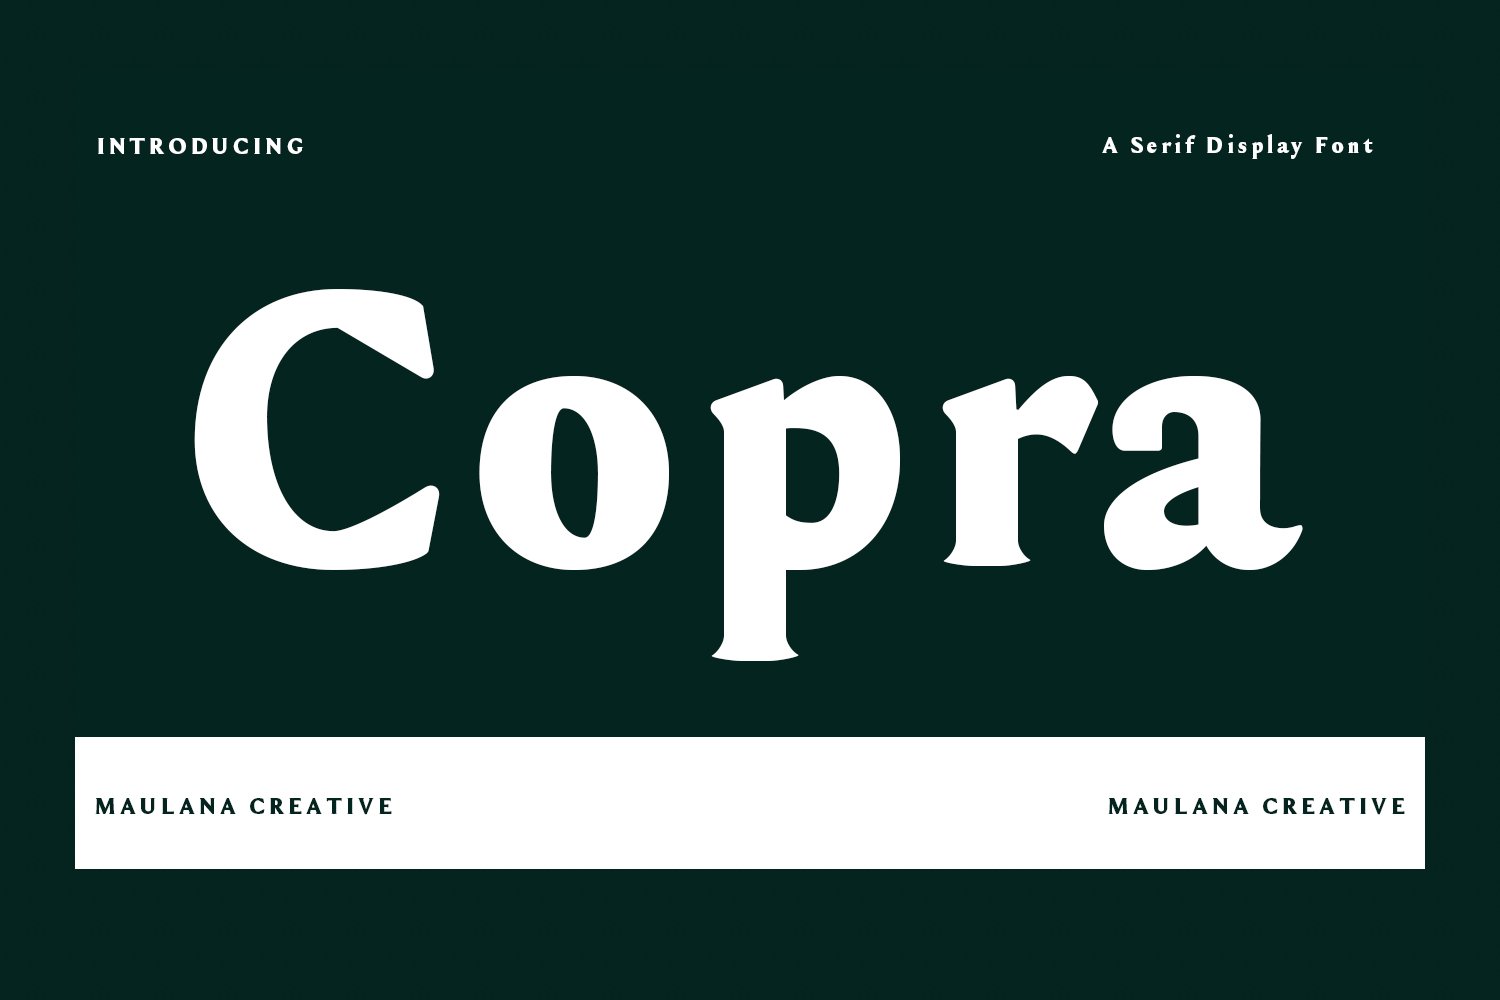 copra serif display font 1 669